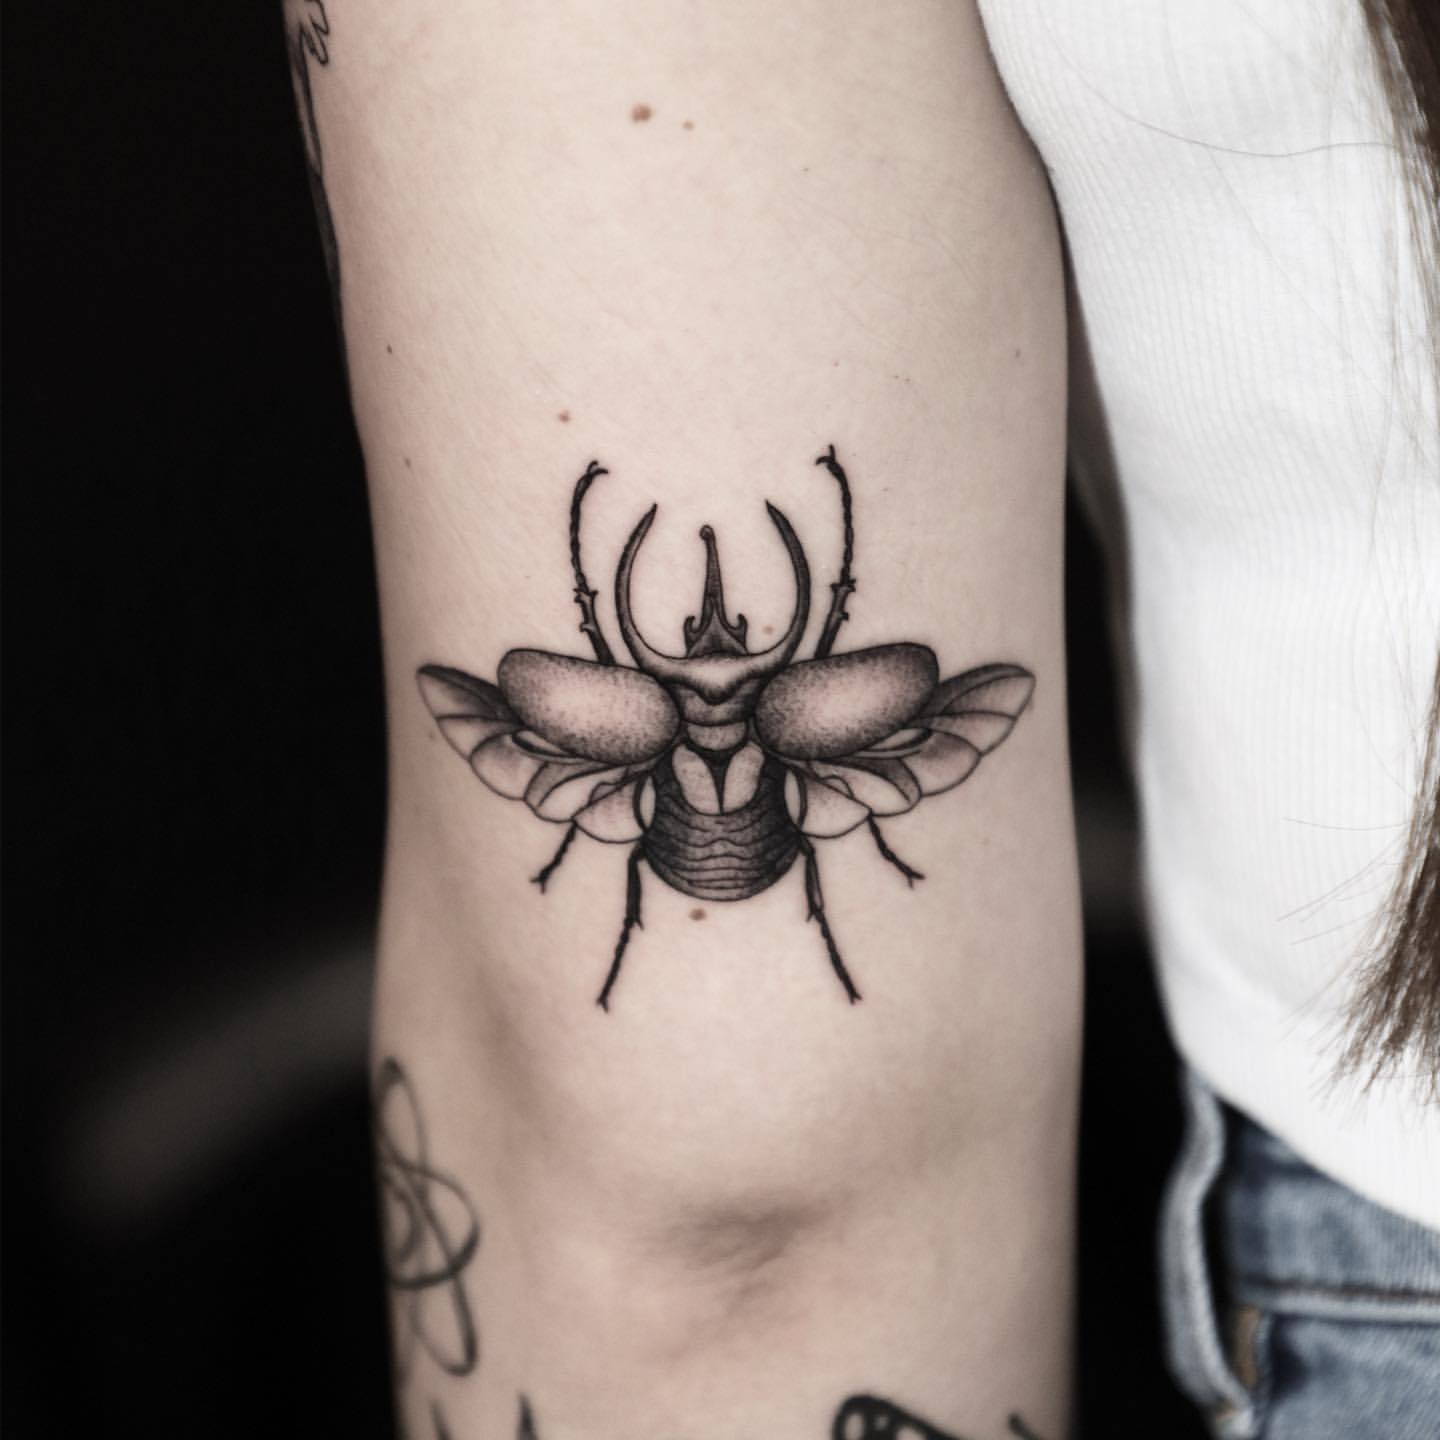 Scarab/Beetle Tattoo Ideas 1